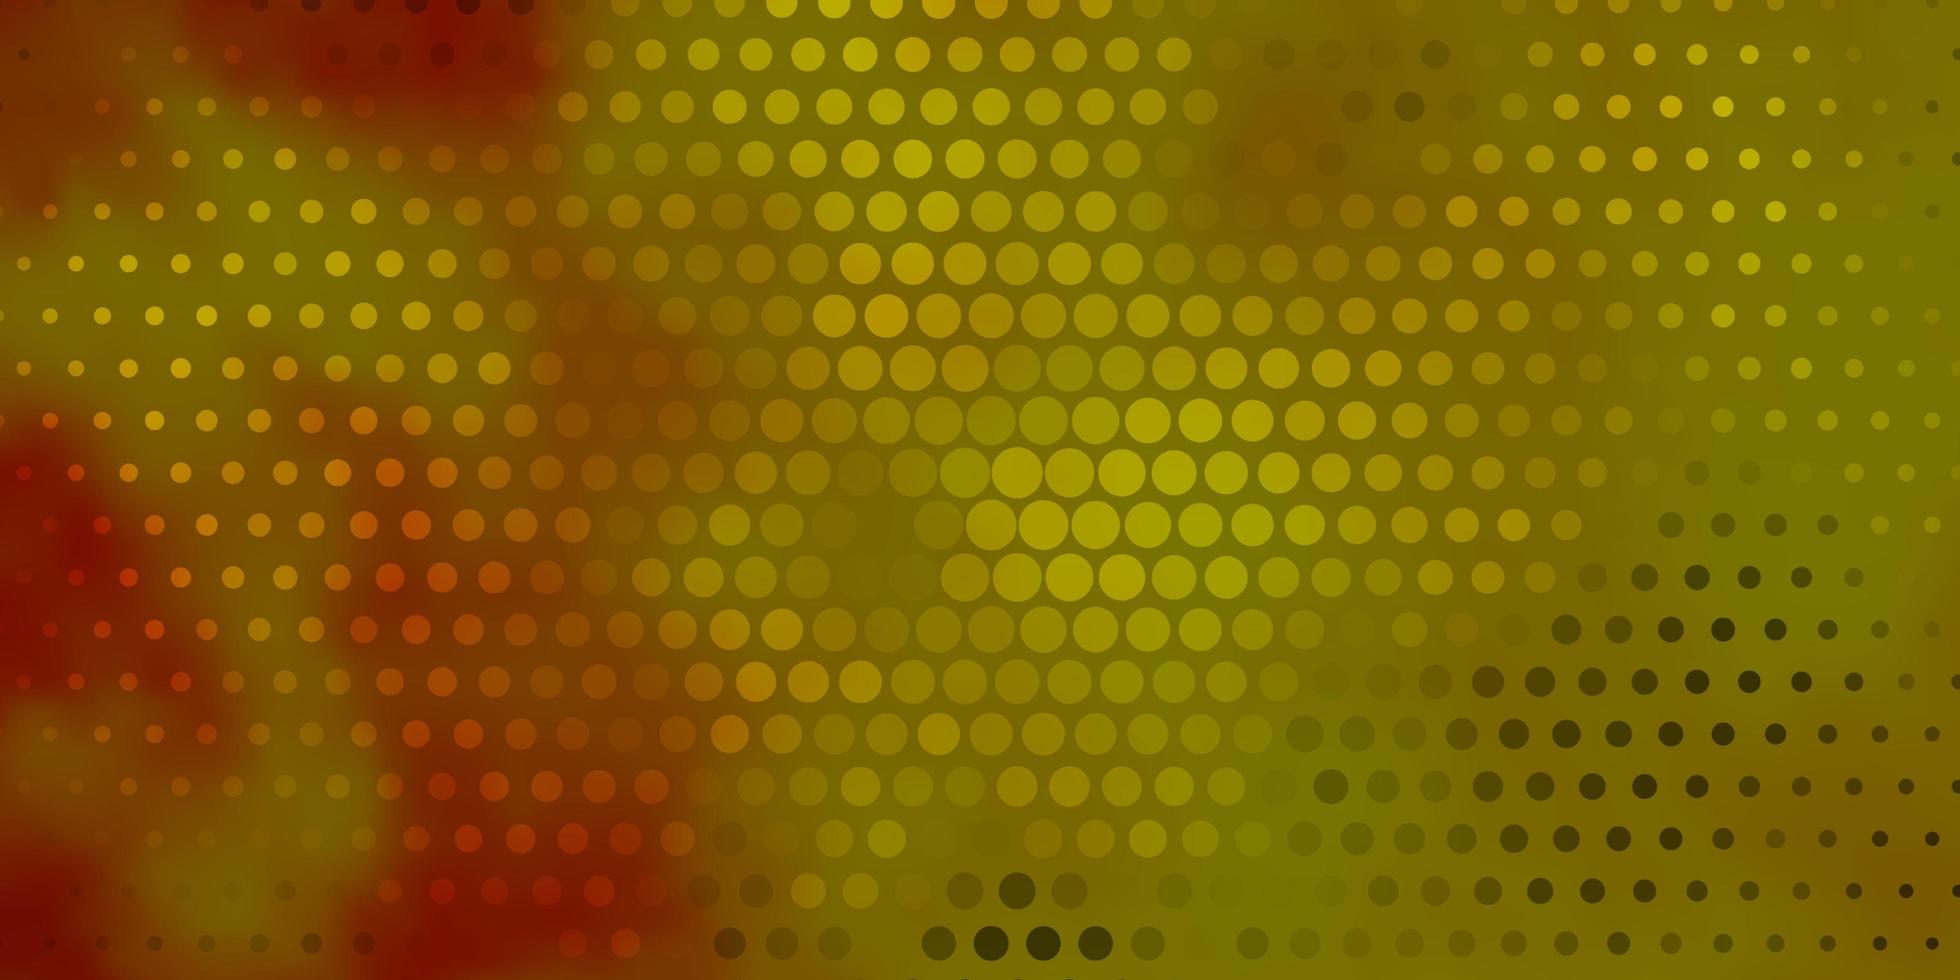 toile de fond de vecteur jaune foncé avec des cercles. design décoratif abstrait dans un style dégradé avec des bulles. modèle pour les sites Web, pages de destination.